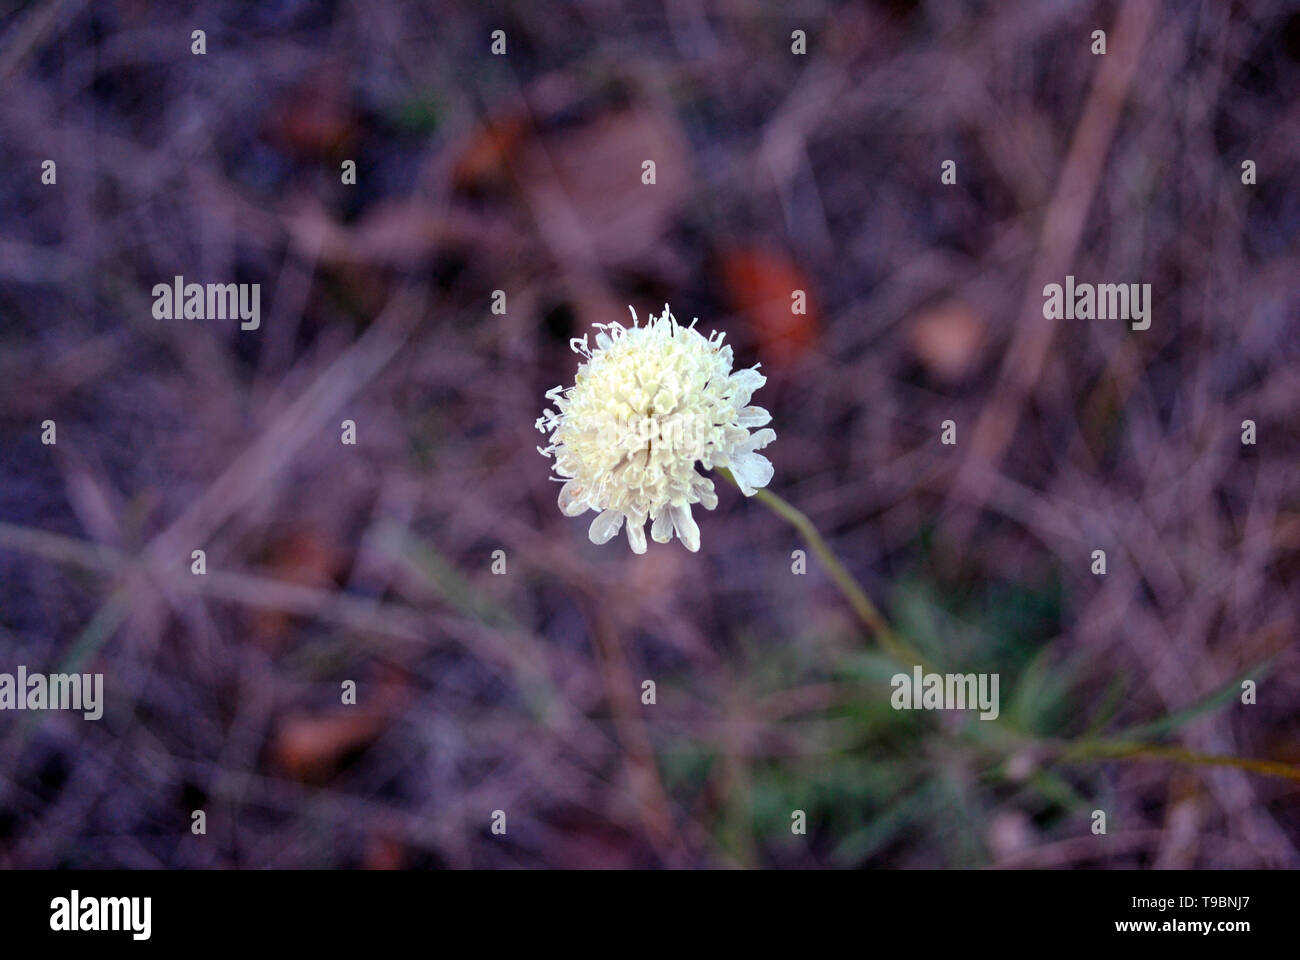 Cephalaria fiore bianco blooming, close up macro dettaglio sul morbido sfondo sfocato, vista dall'alto Foto Stock